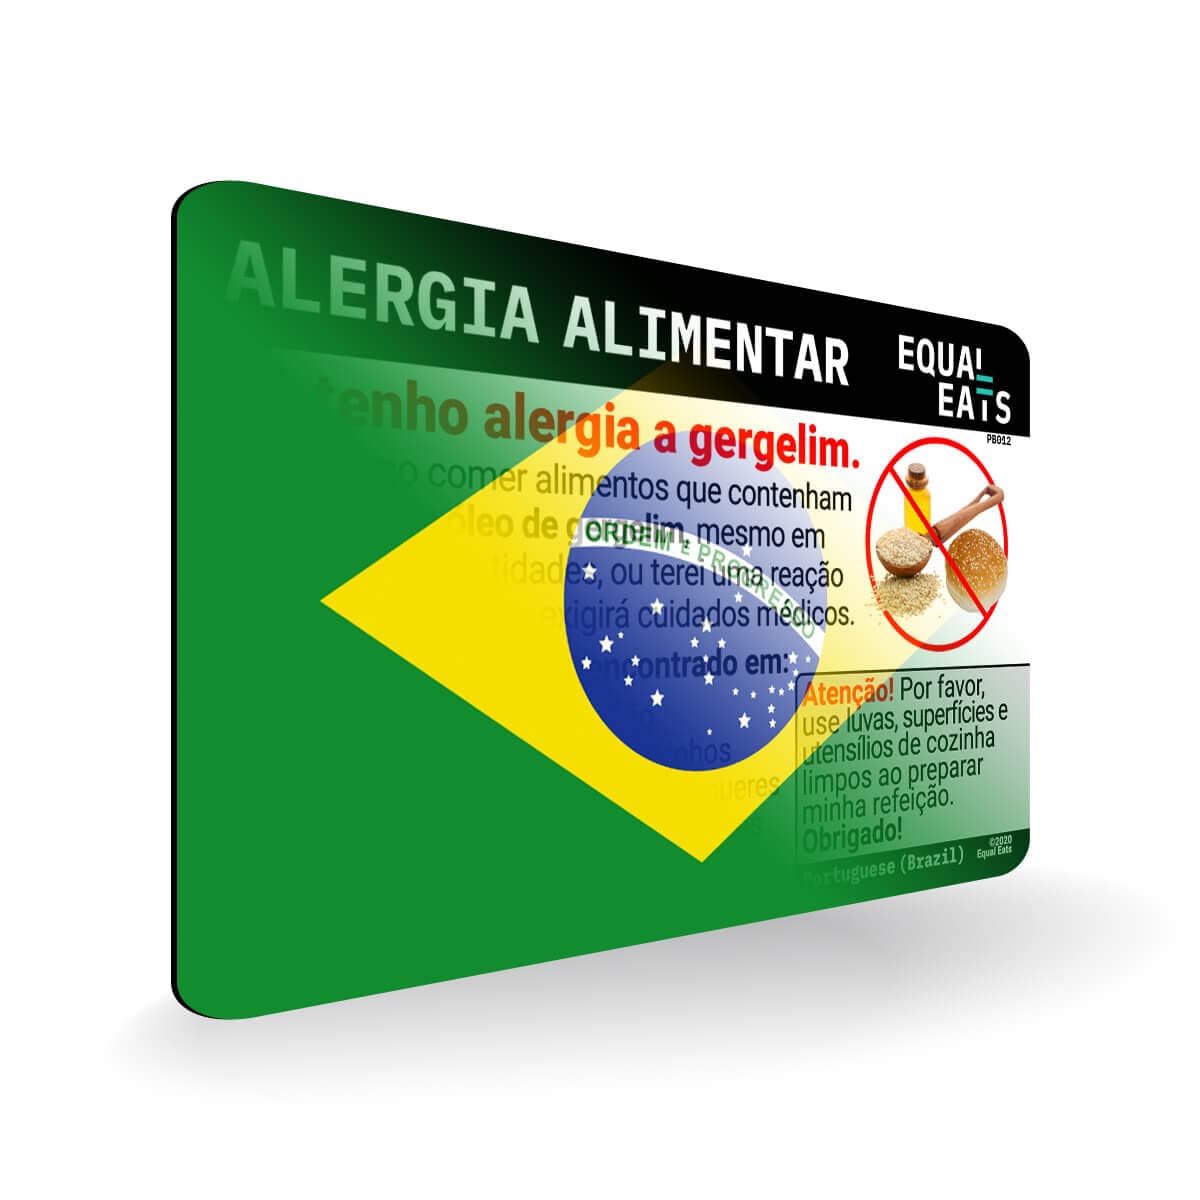 Sesame Allergy in Portuguese. Sesame Allergy Card for Brazil